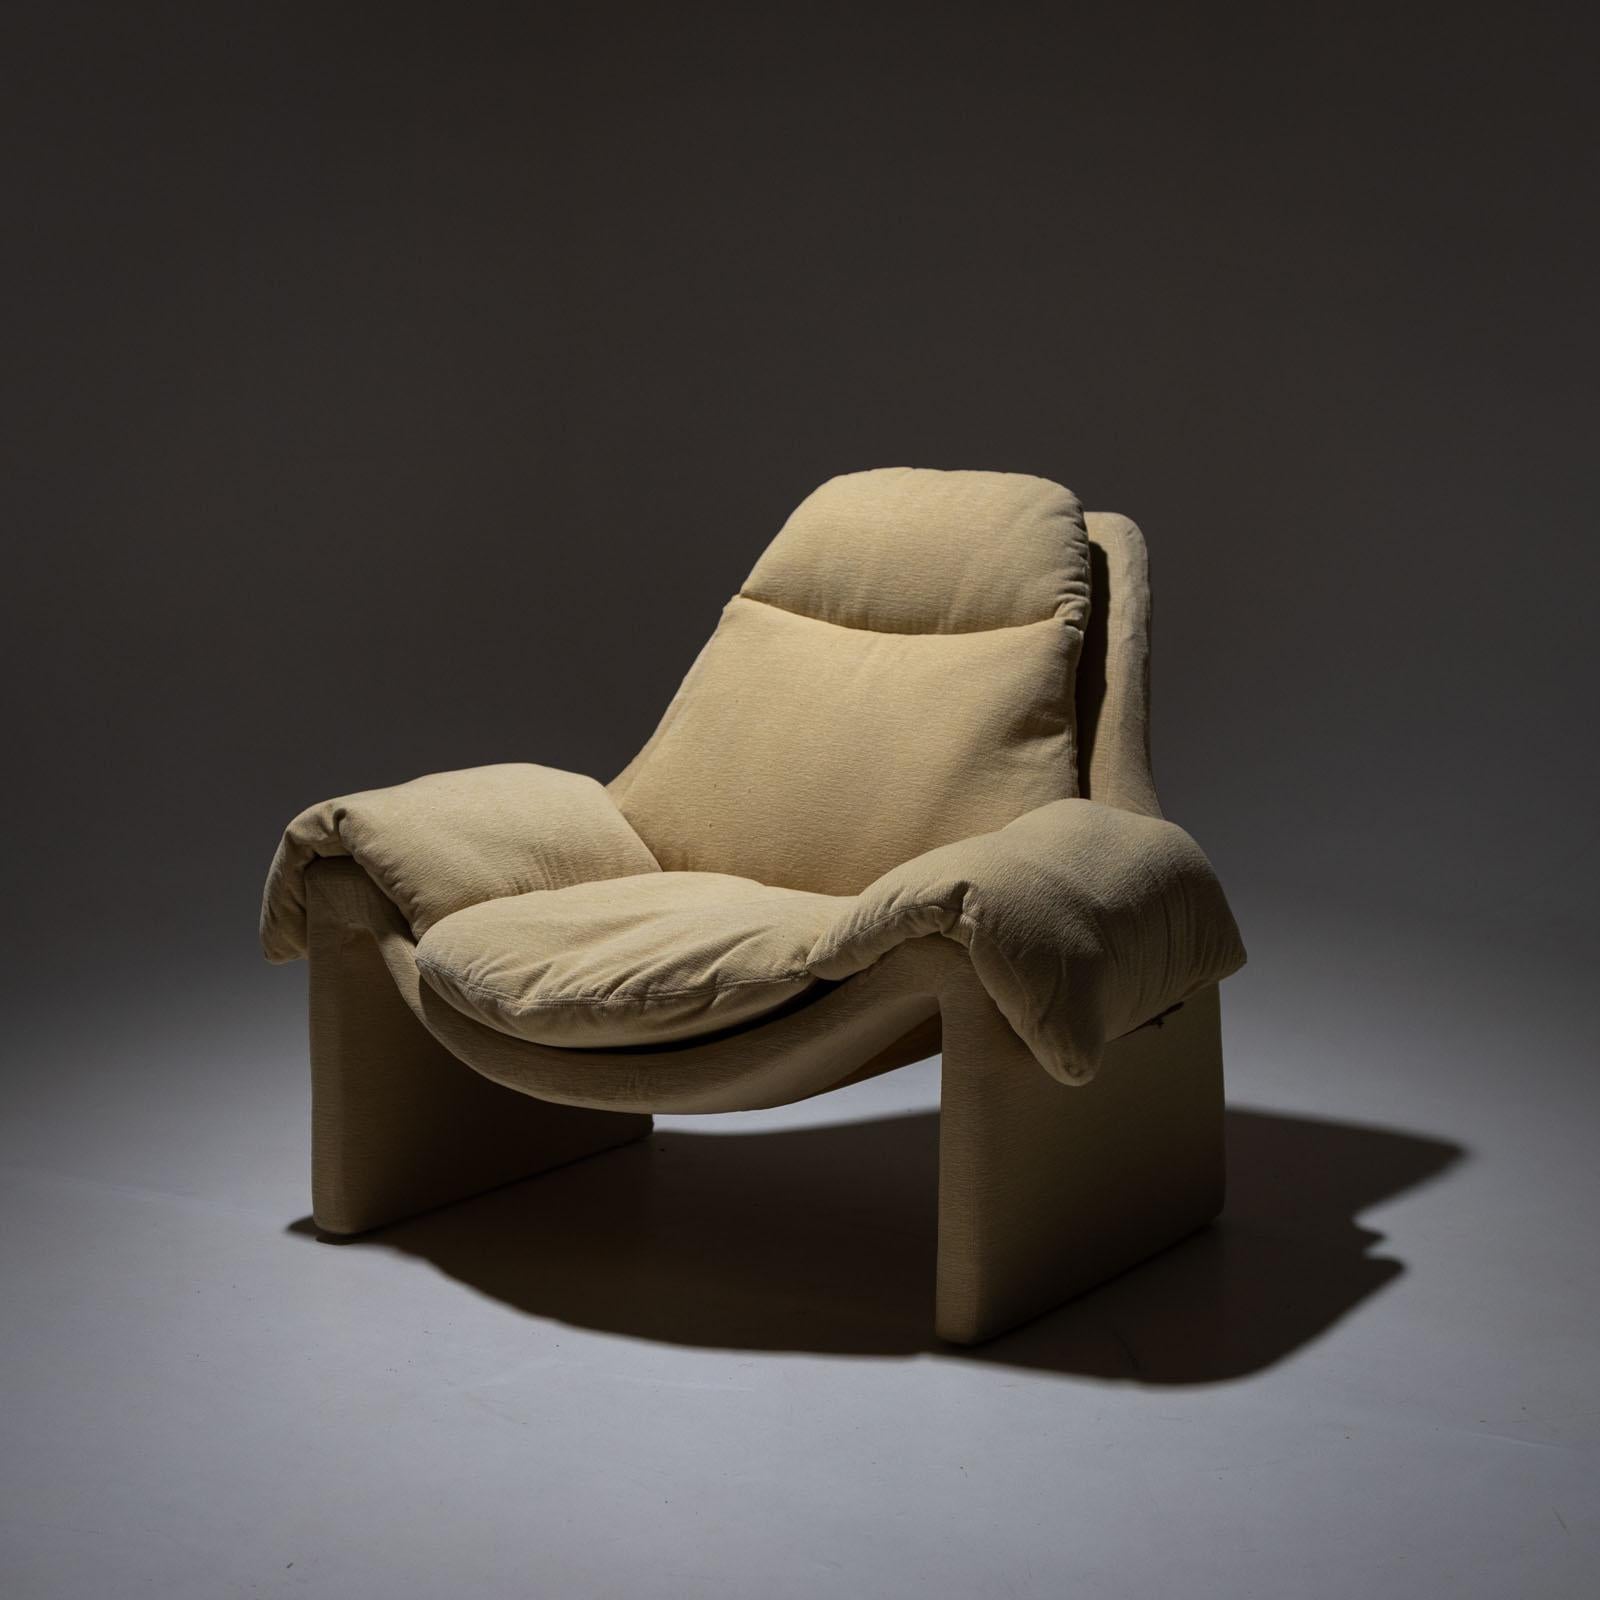 Chaise longue P60 avec revêtement beige. Le fauteuil a été conçu pour la première fois par Vittorio Introini pour Saporiti dans les années 1960. La couverture est en bon état.